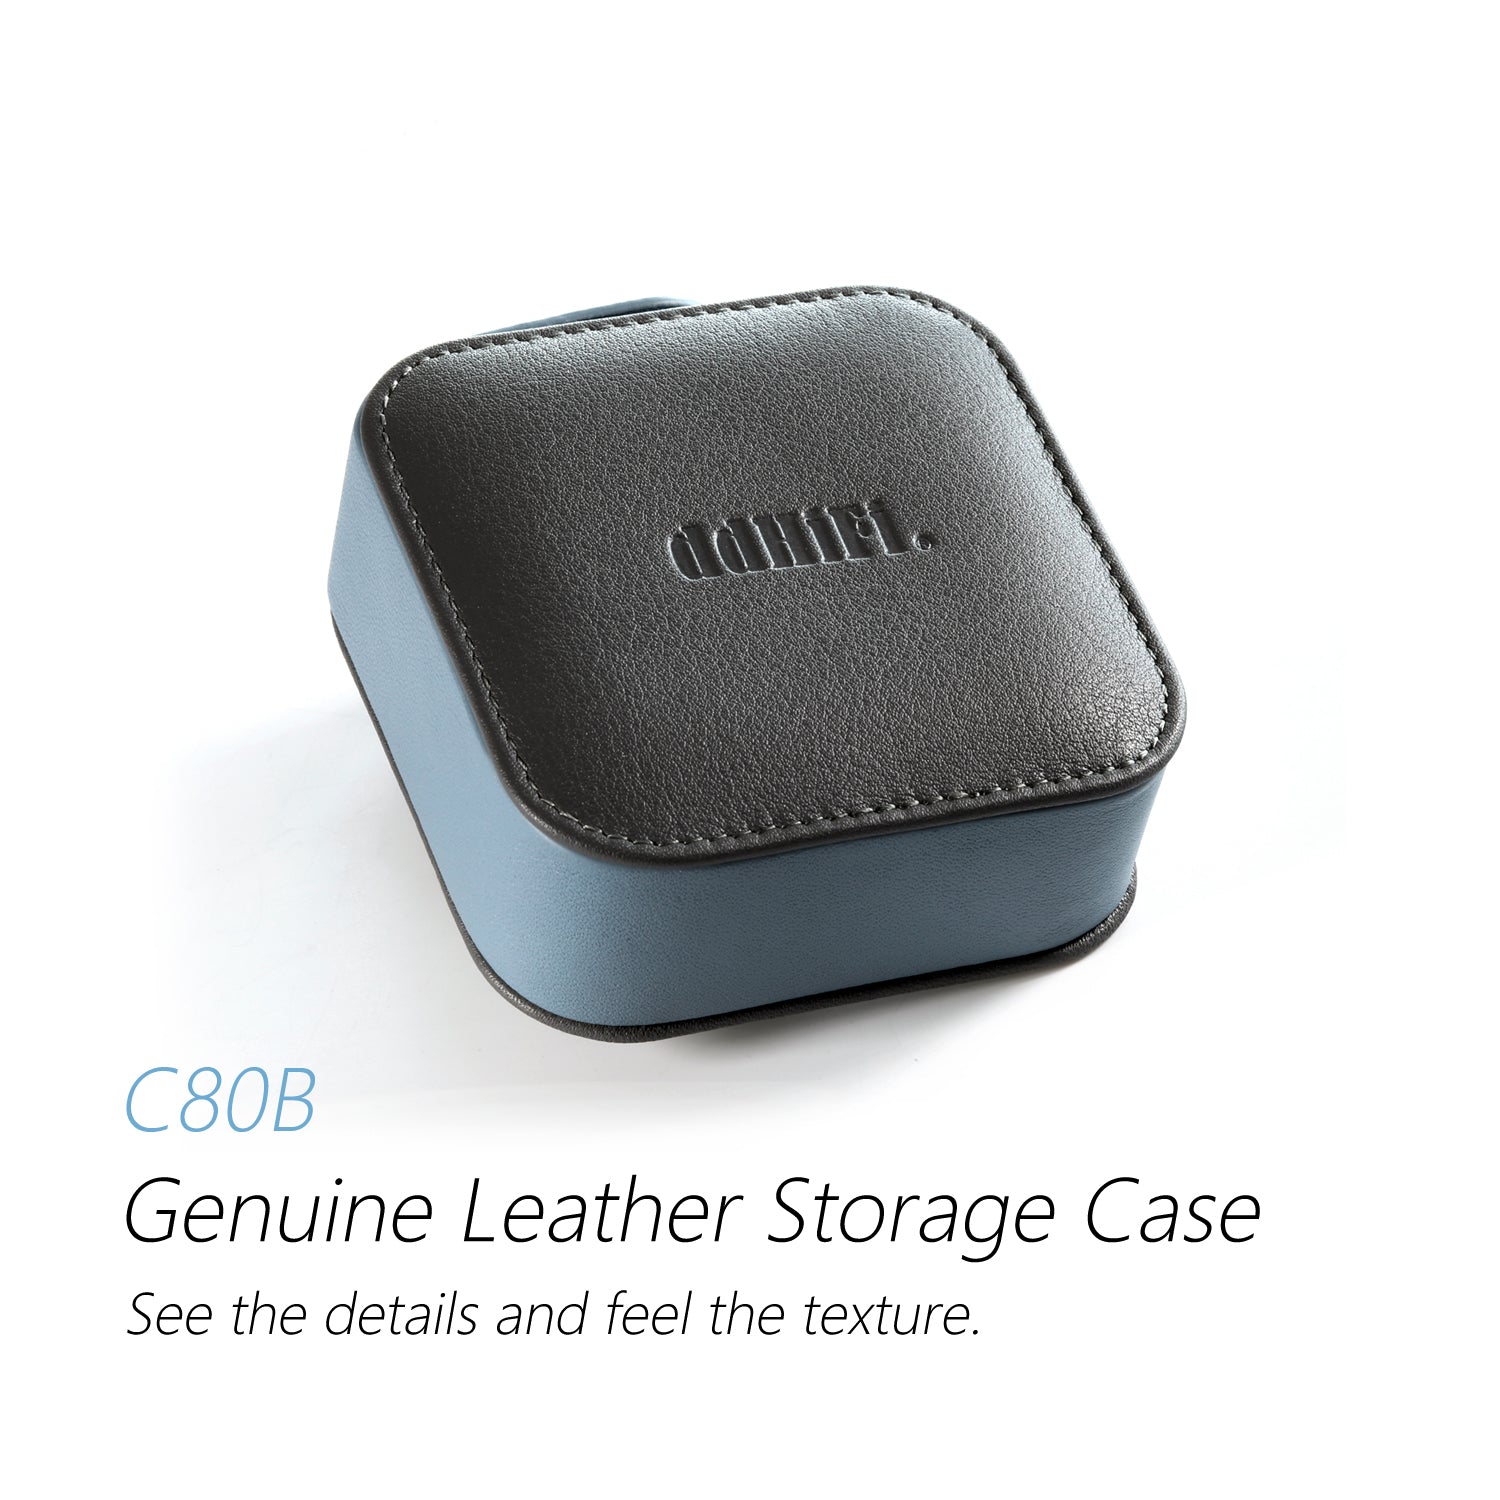 DD Hifi C80B Genuine Leather Storage Case